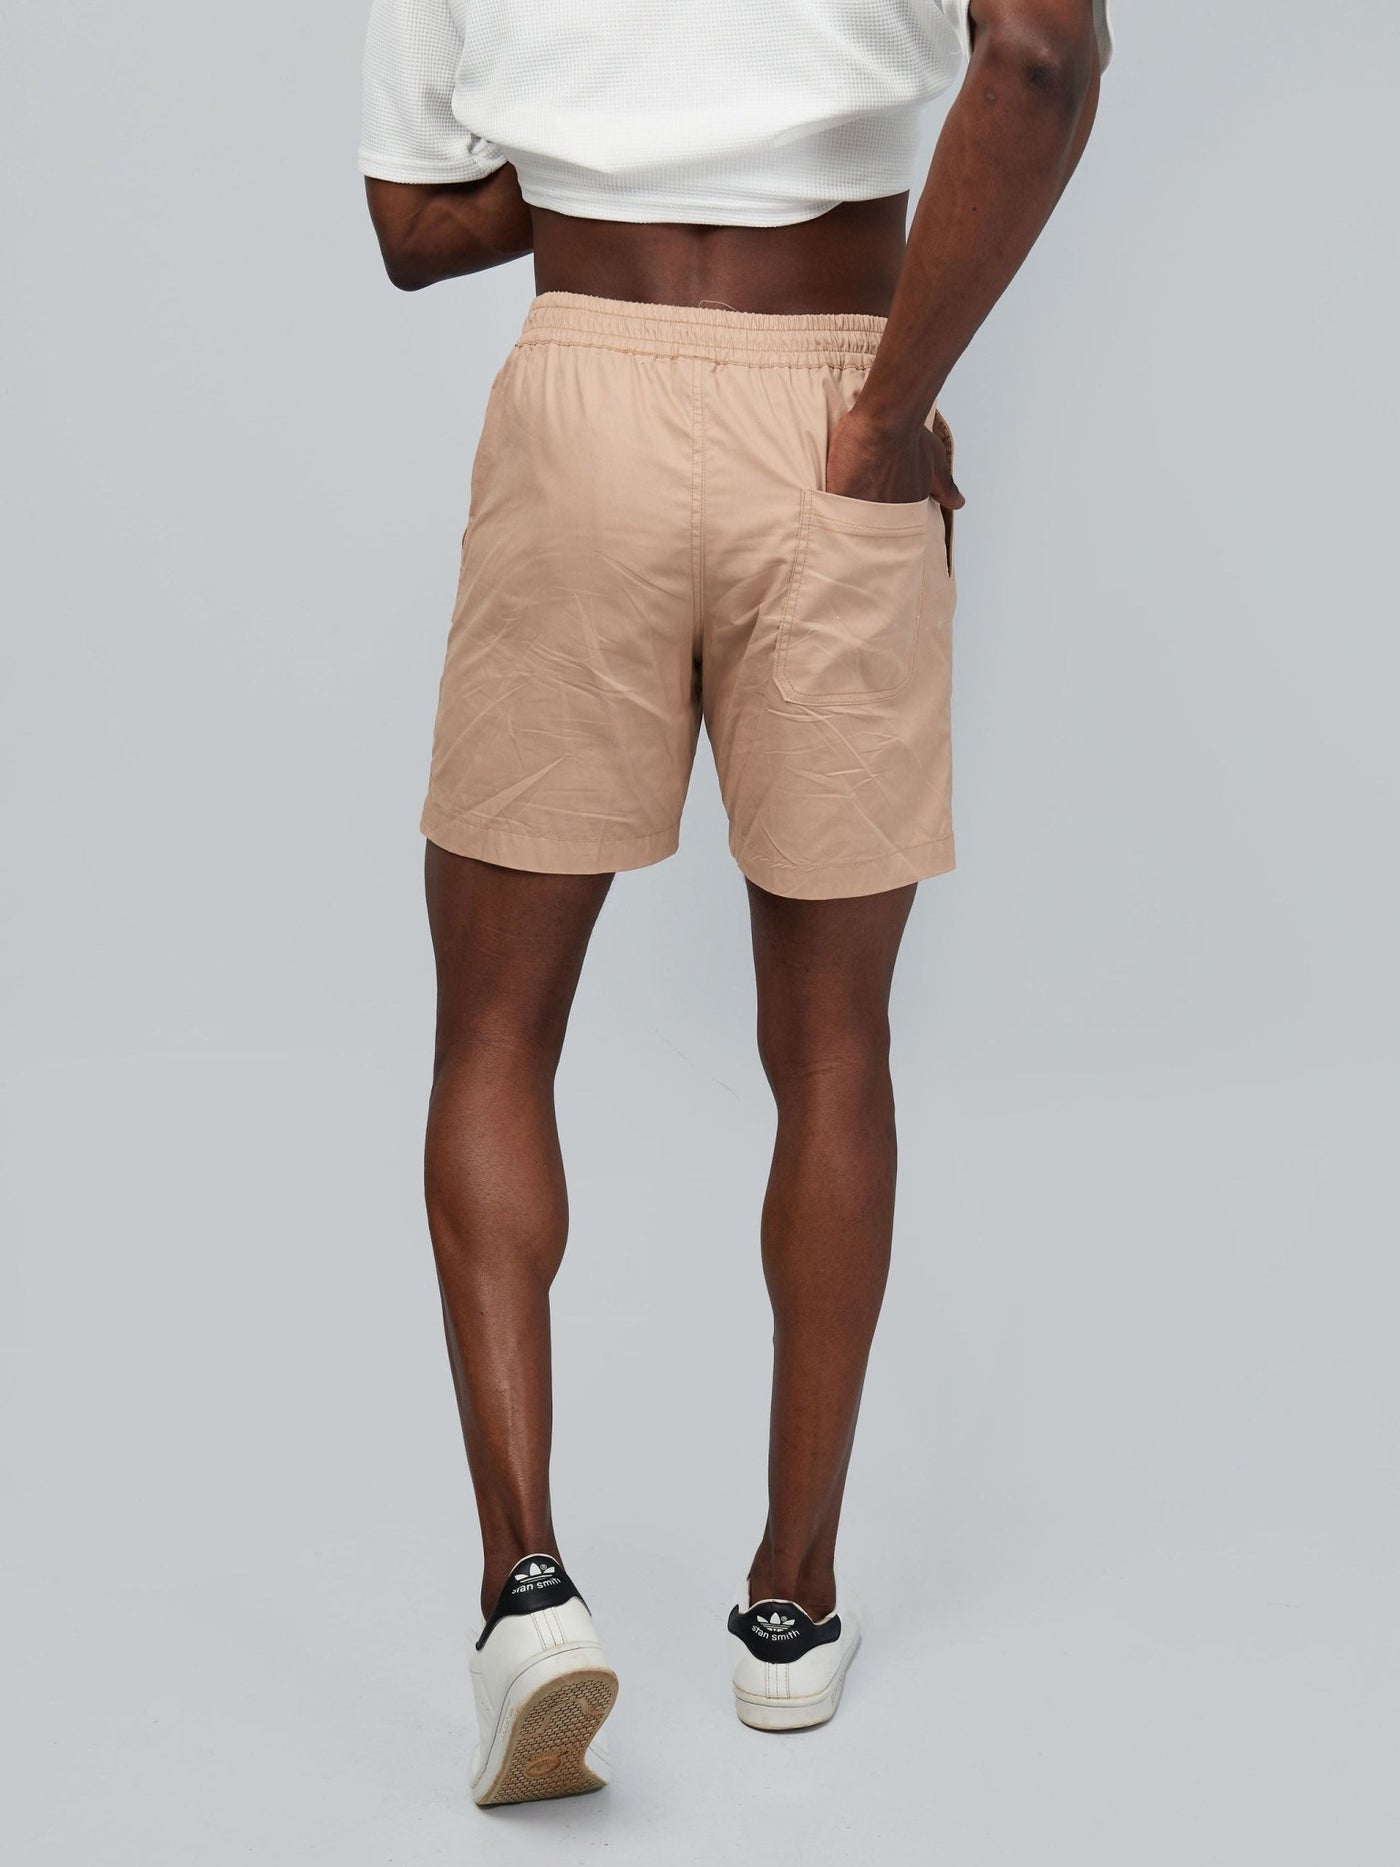 Zetu Men's Beach Shorts - Light Brown - Shopzetu